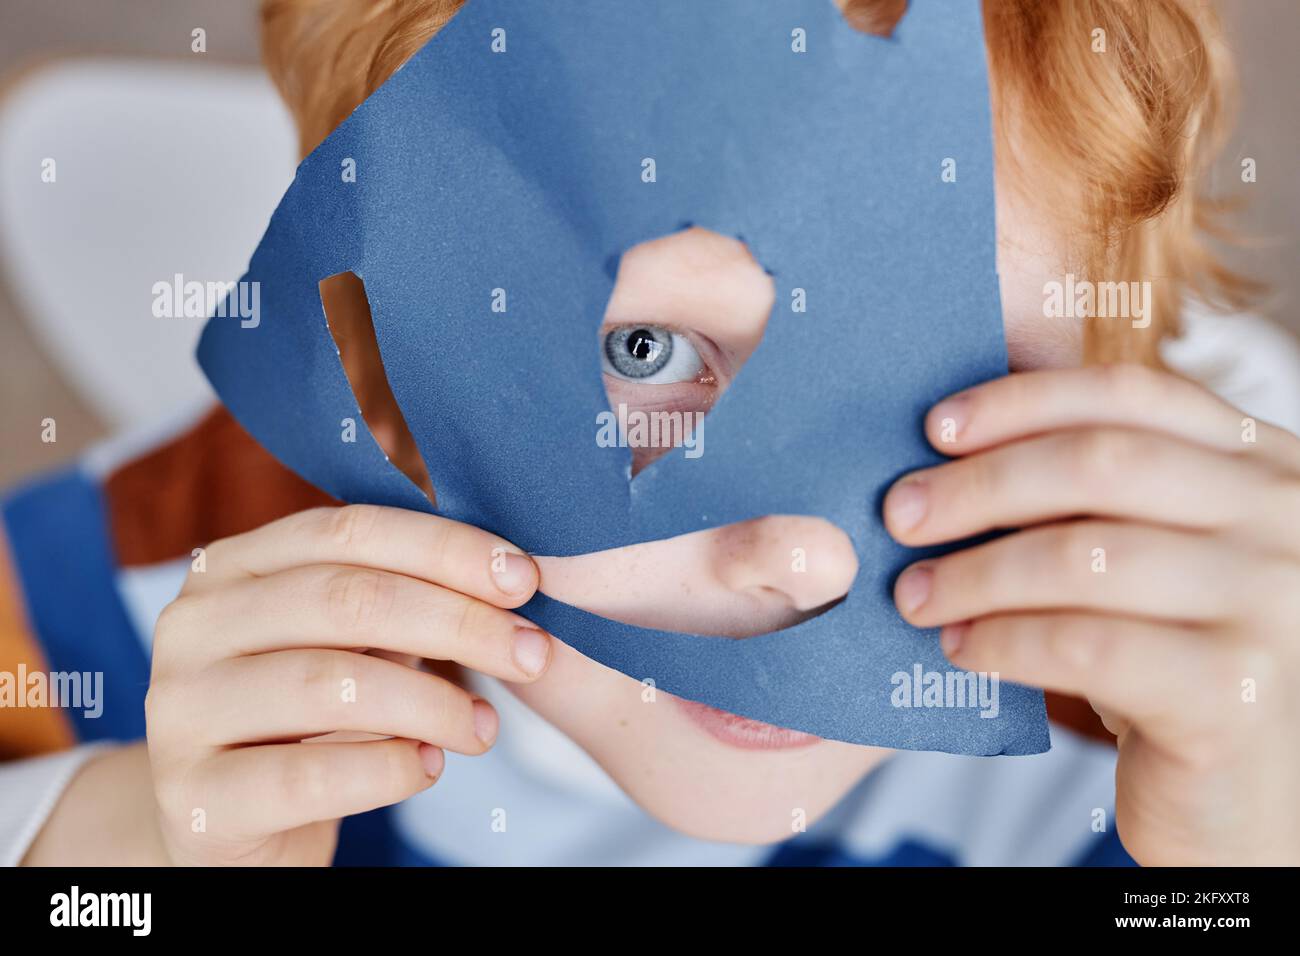 Primo piano di un simpatico ragazzino blueeyed che copre il viso con una maschera di carta blu fatta a mano, mantenendo occhio e naso nei fori tagliati Foto Stock